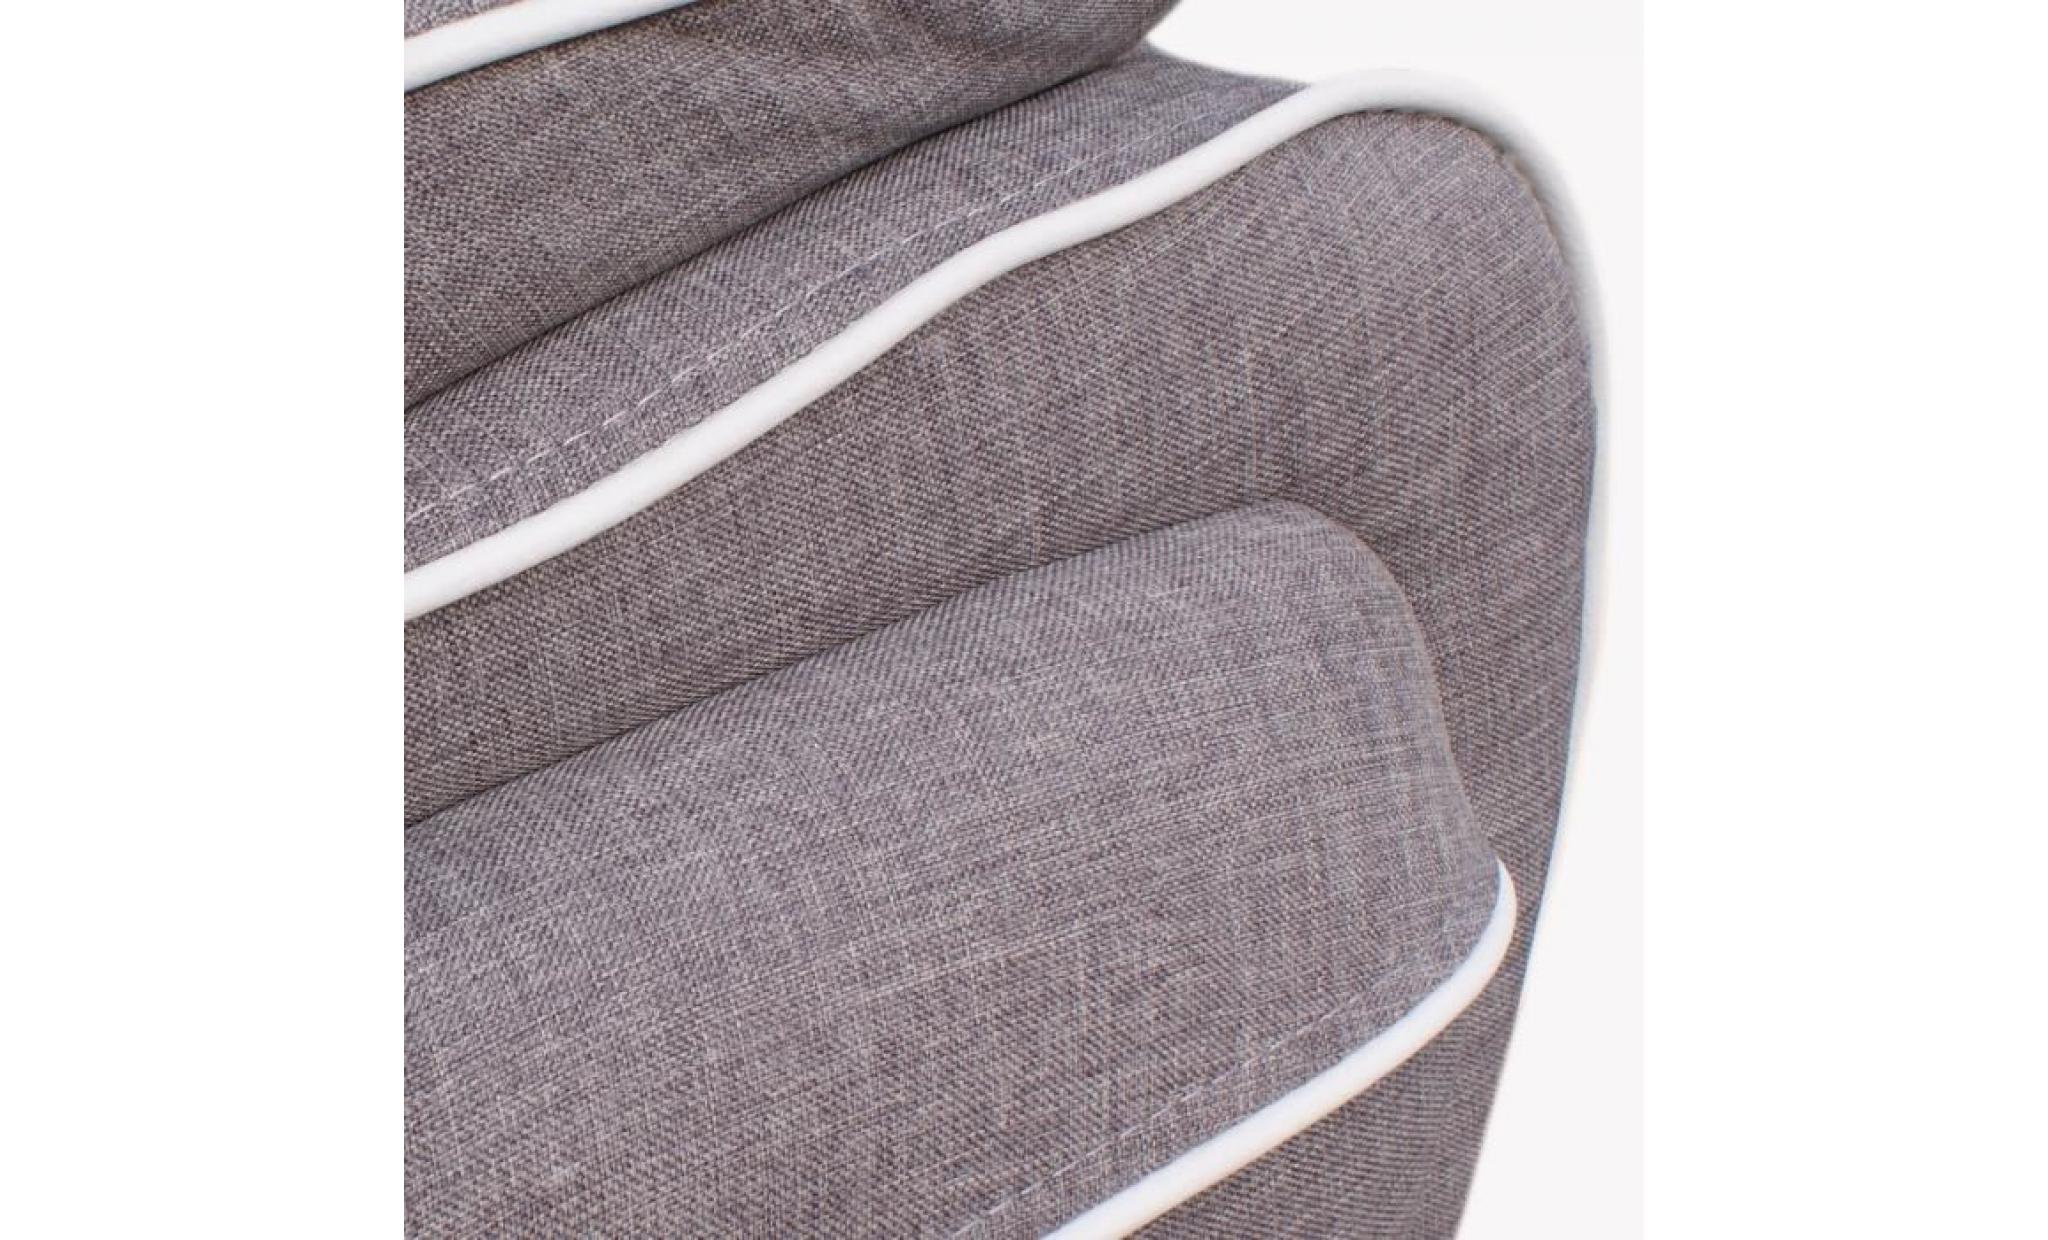 spacio canapé droit 2 places   tissu   gris passepoil blanc   contemporain   l 162 x p 86 cm pas cher